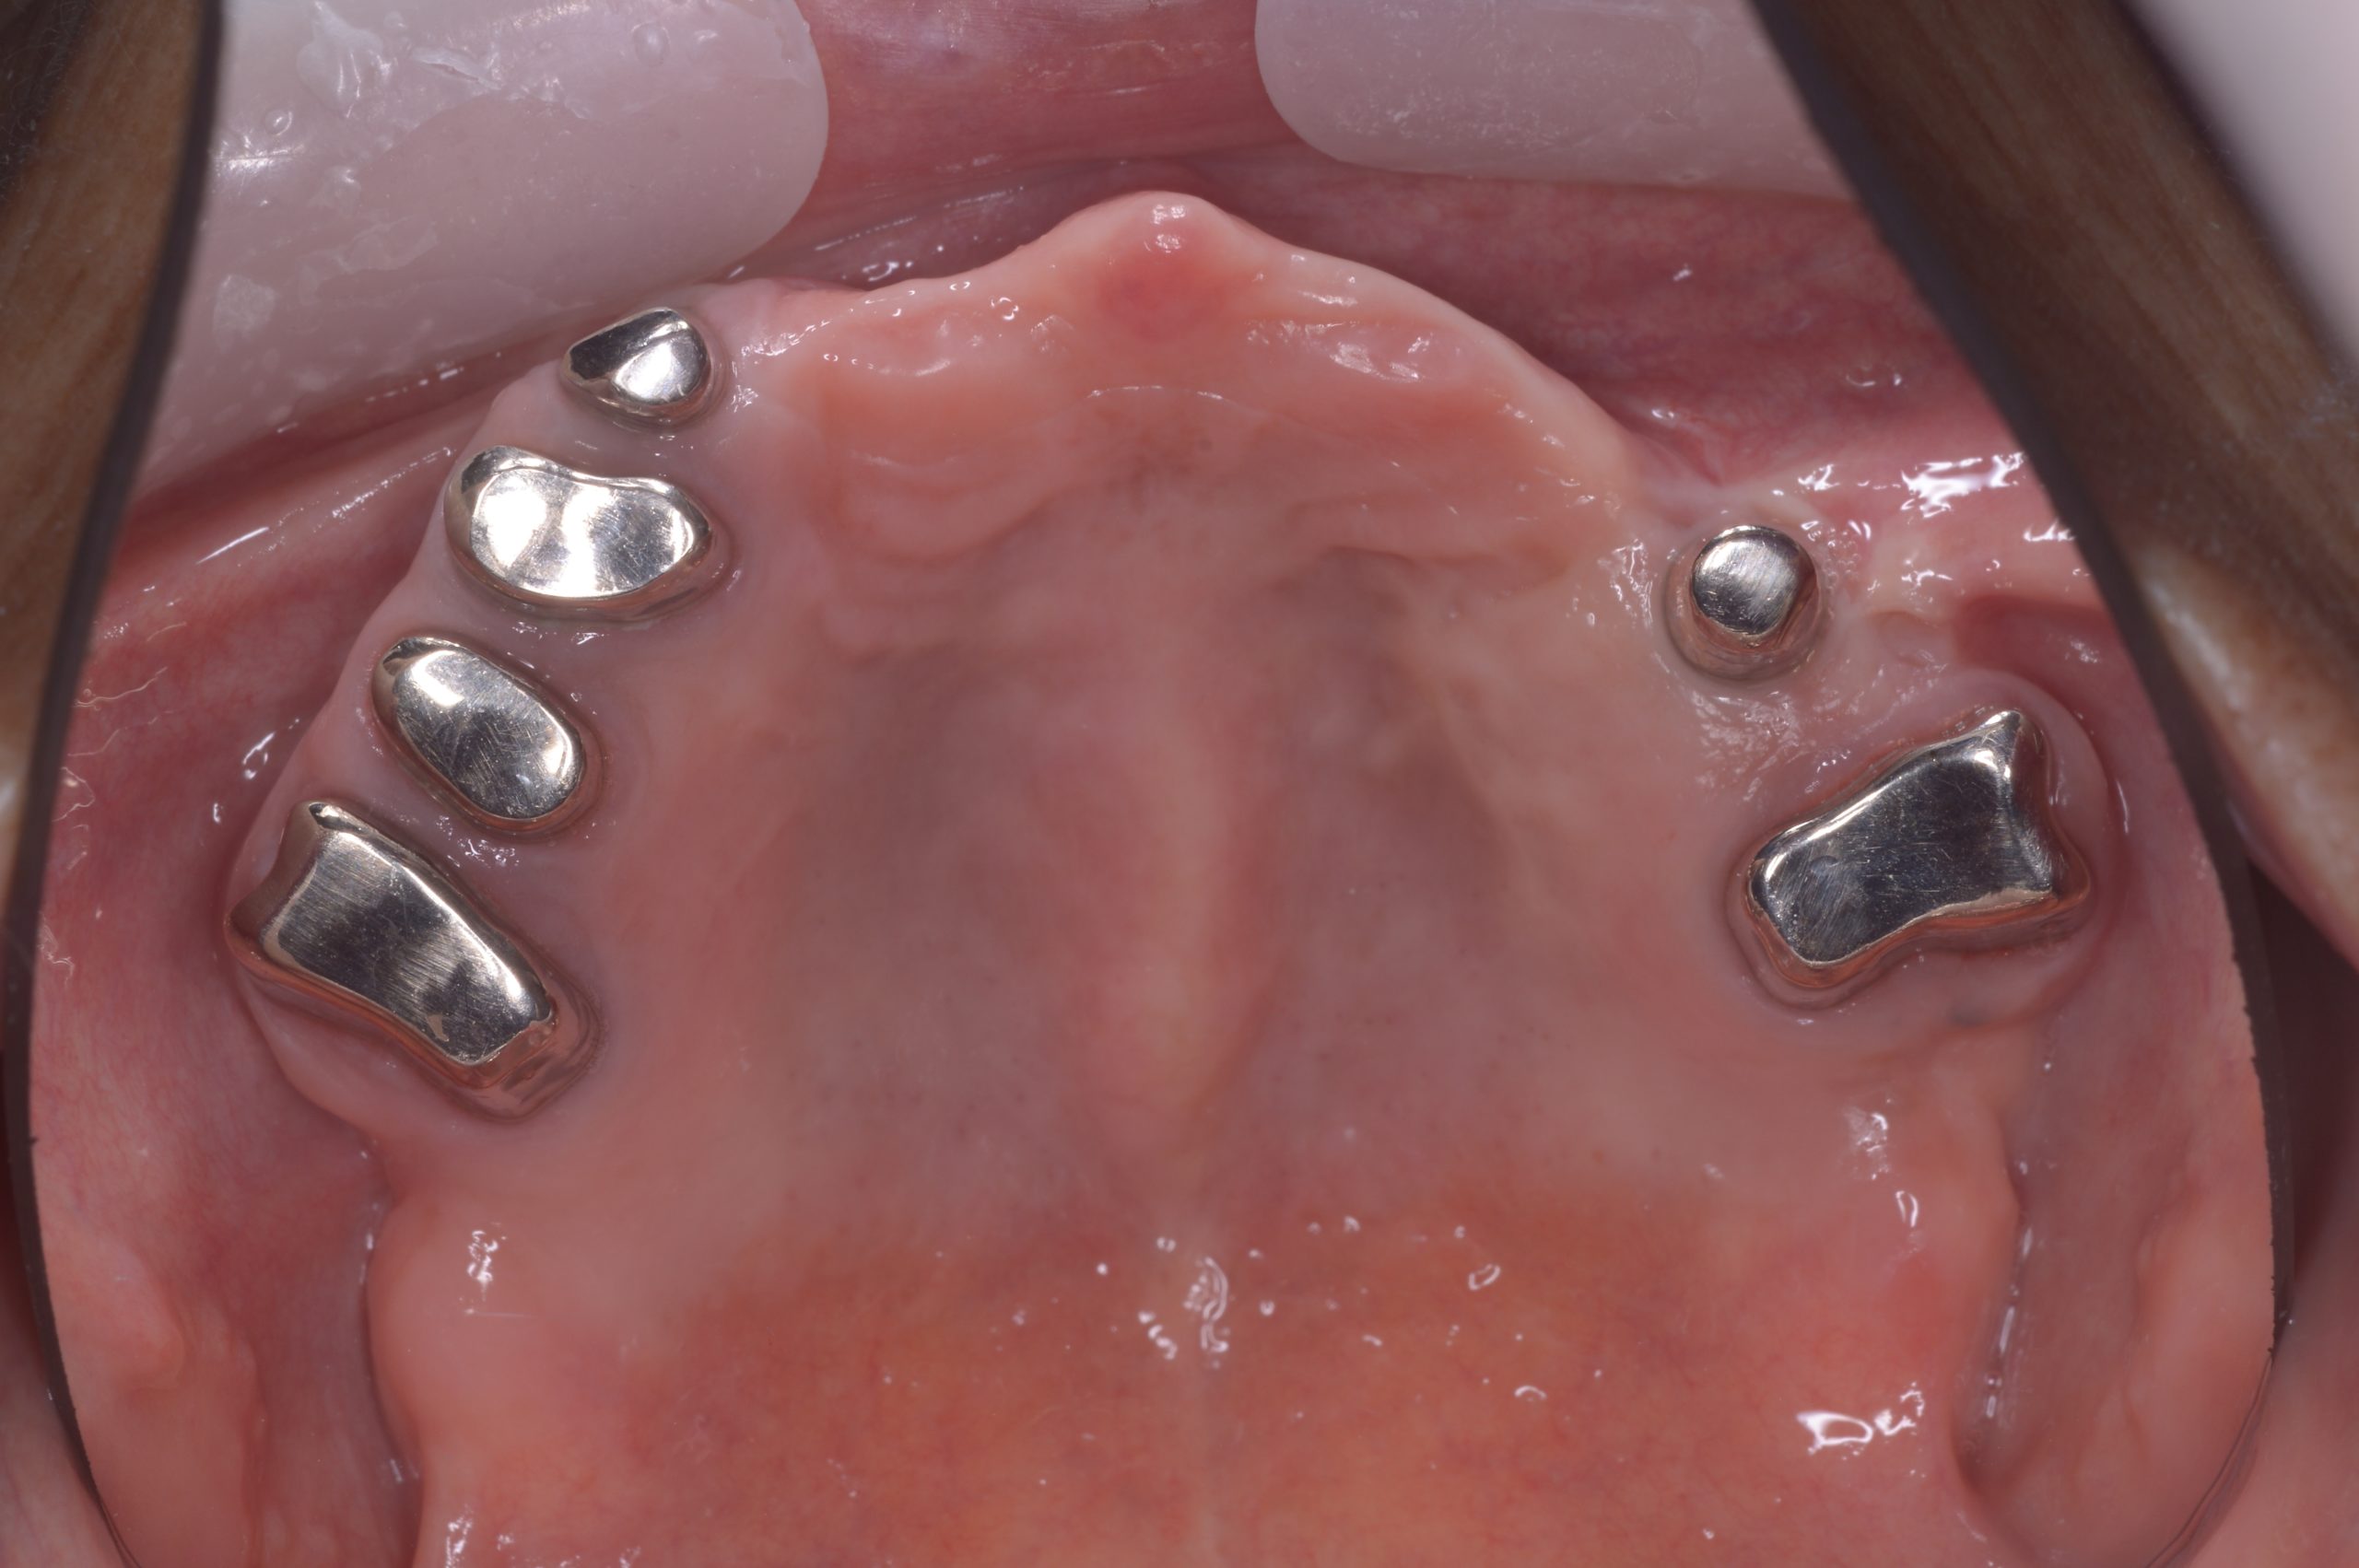 嘔吐反射が強く義歯が使えないためコーヌスデンチャーで治療した症例